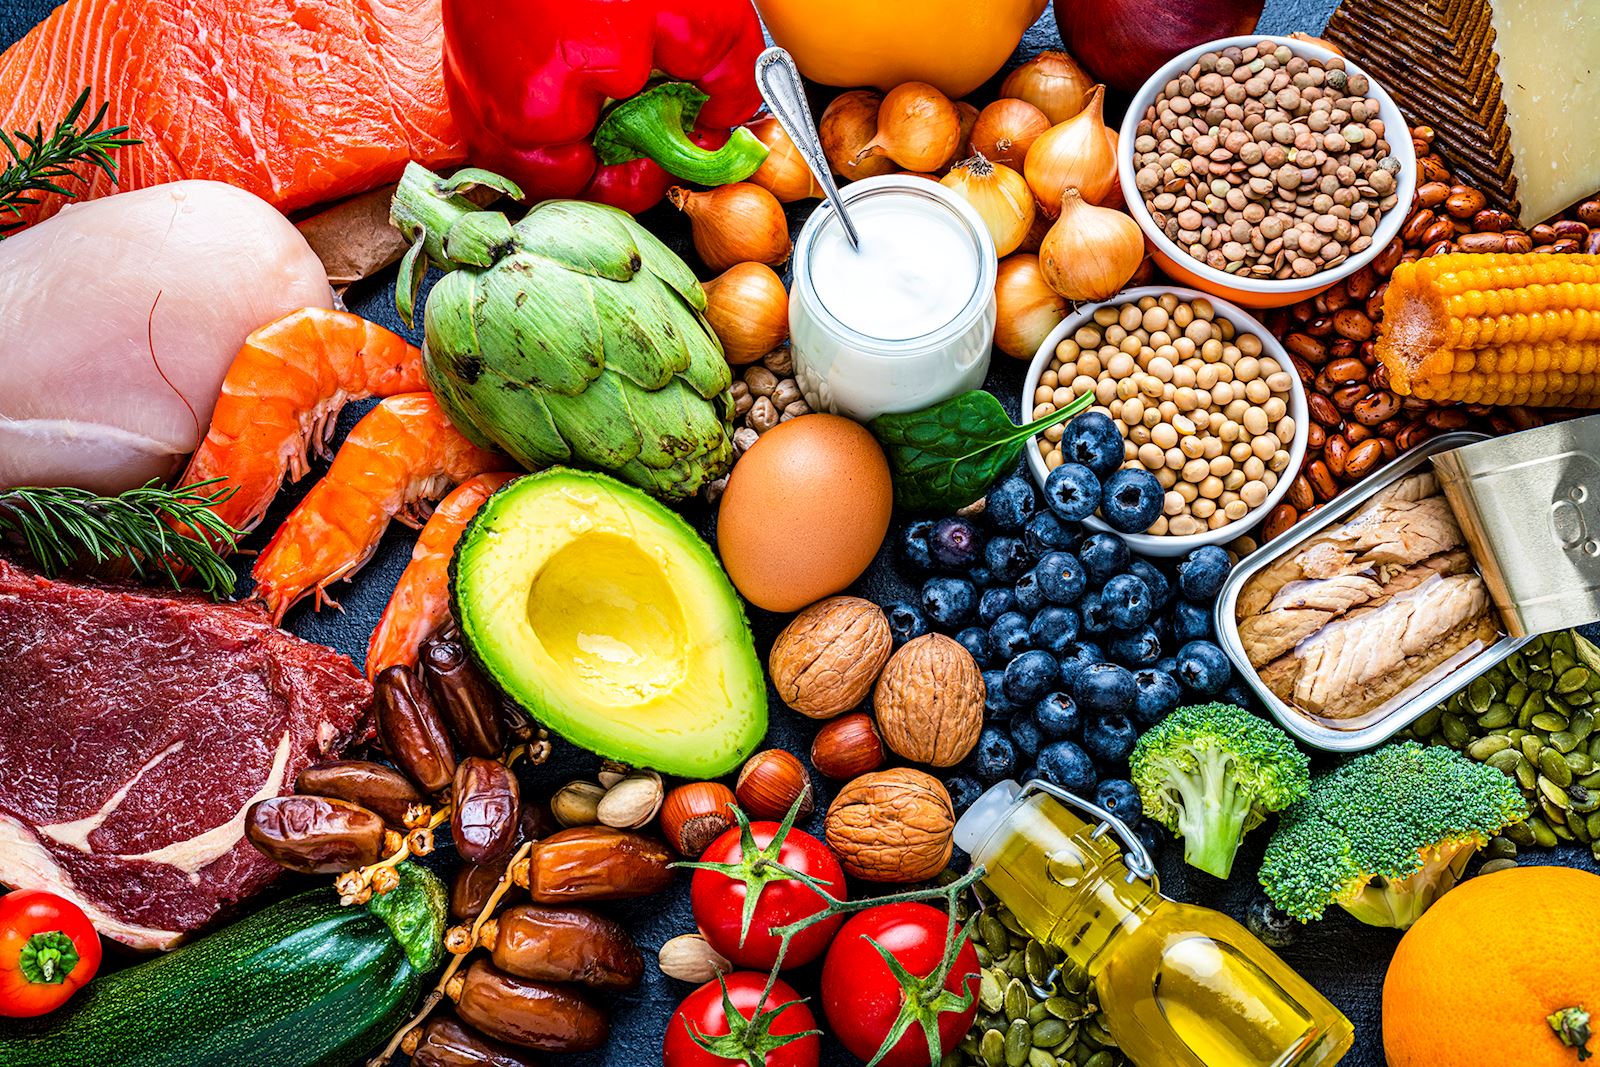 Health benefits of the Mediterranean diet